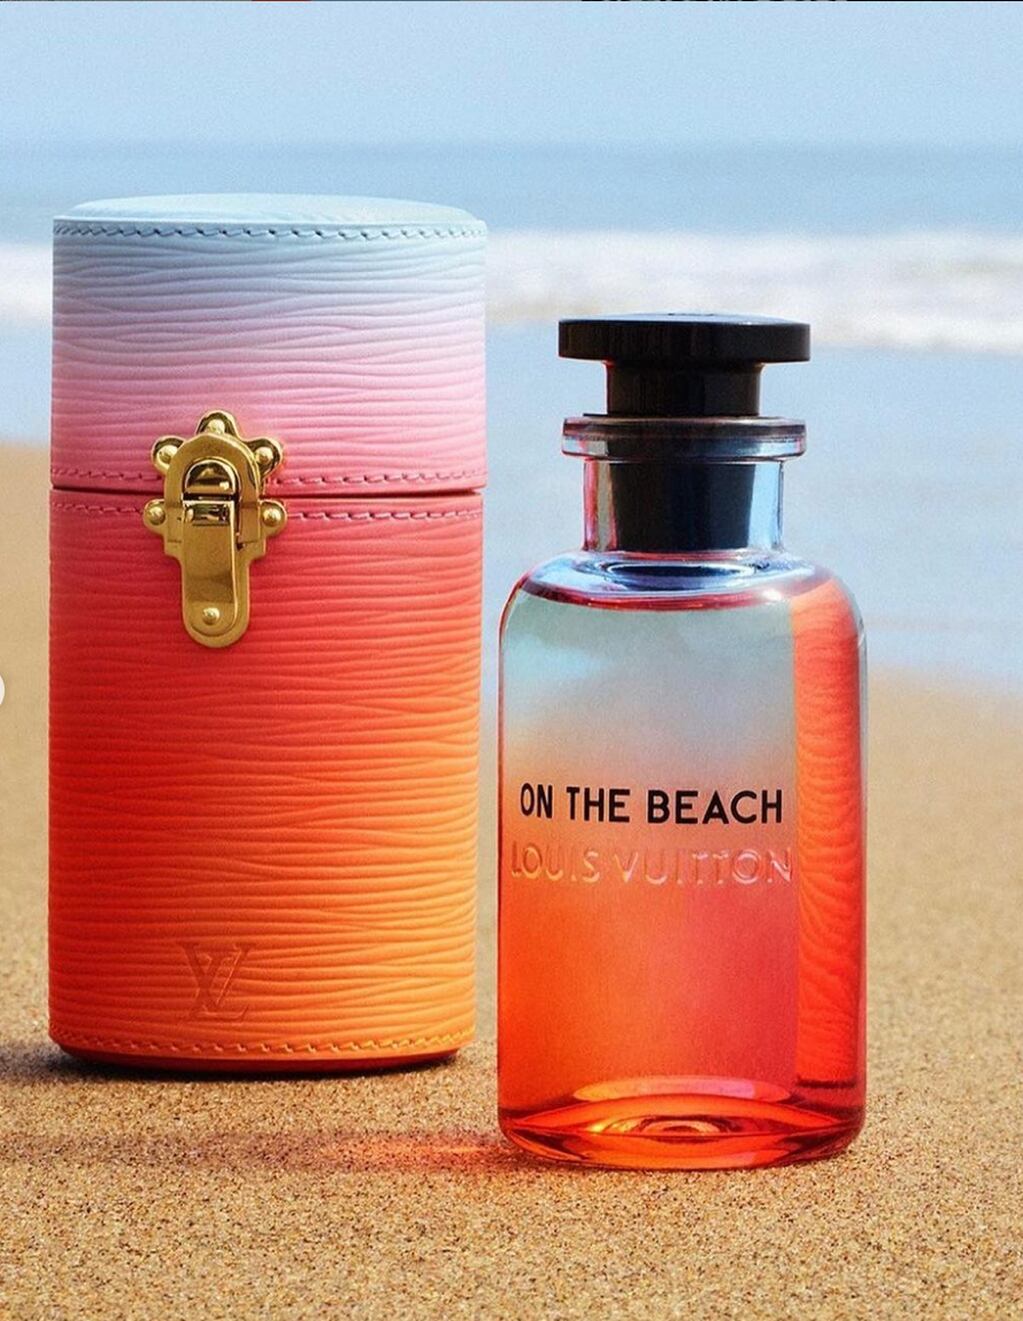 On the Beach, la nueva fragancia de Louis Vuitton.